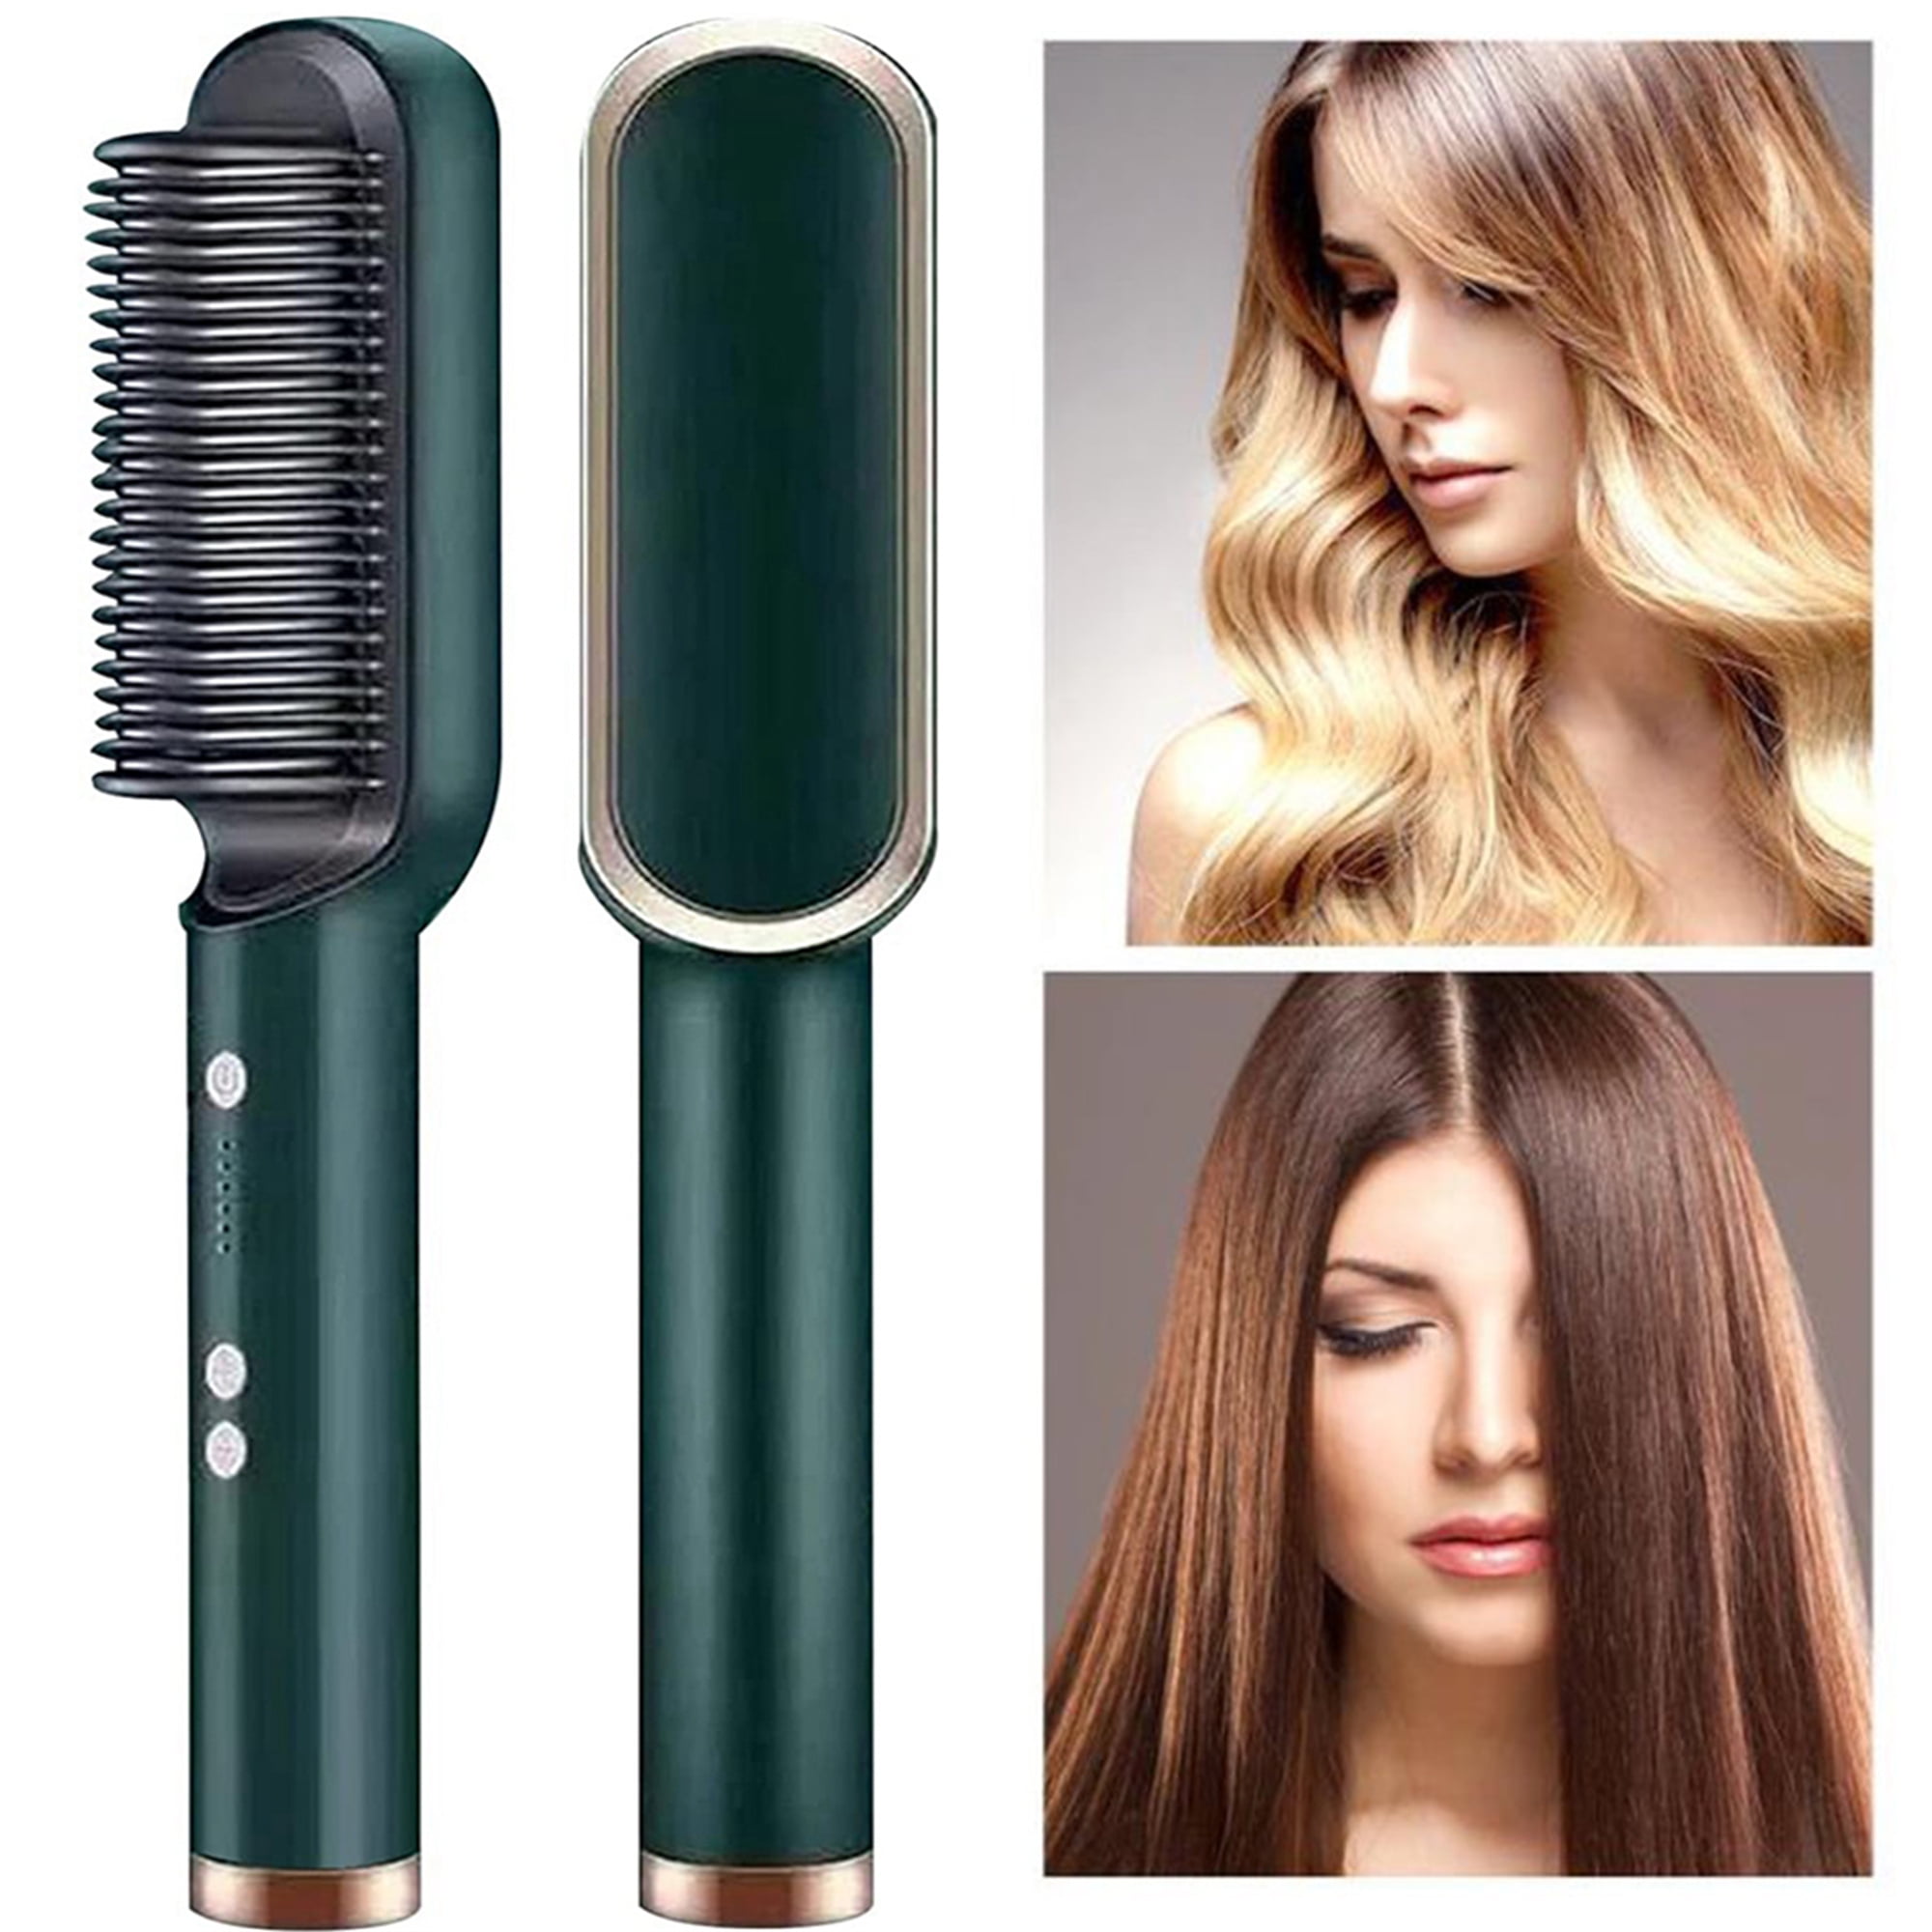 Hair Straightener Brush 2 In 1 Ionic Straightening Brush With 3 Heat Levels  Fast Ceramic Heating AntiScald Straightening Comb  Walmartcom